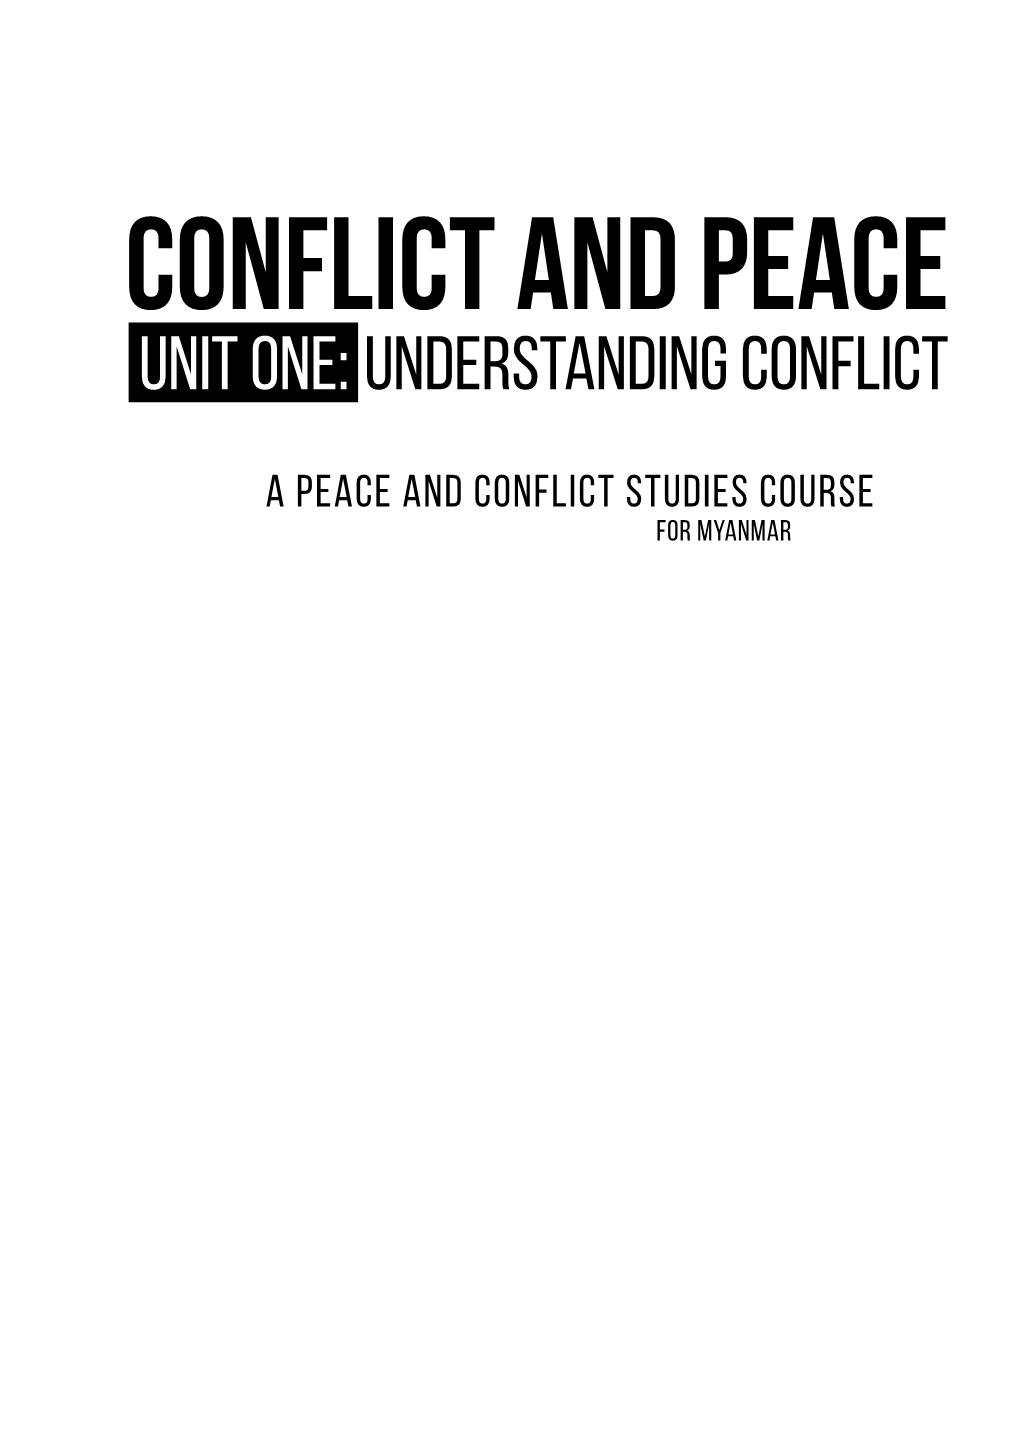 Understanding Conflict